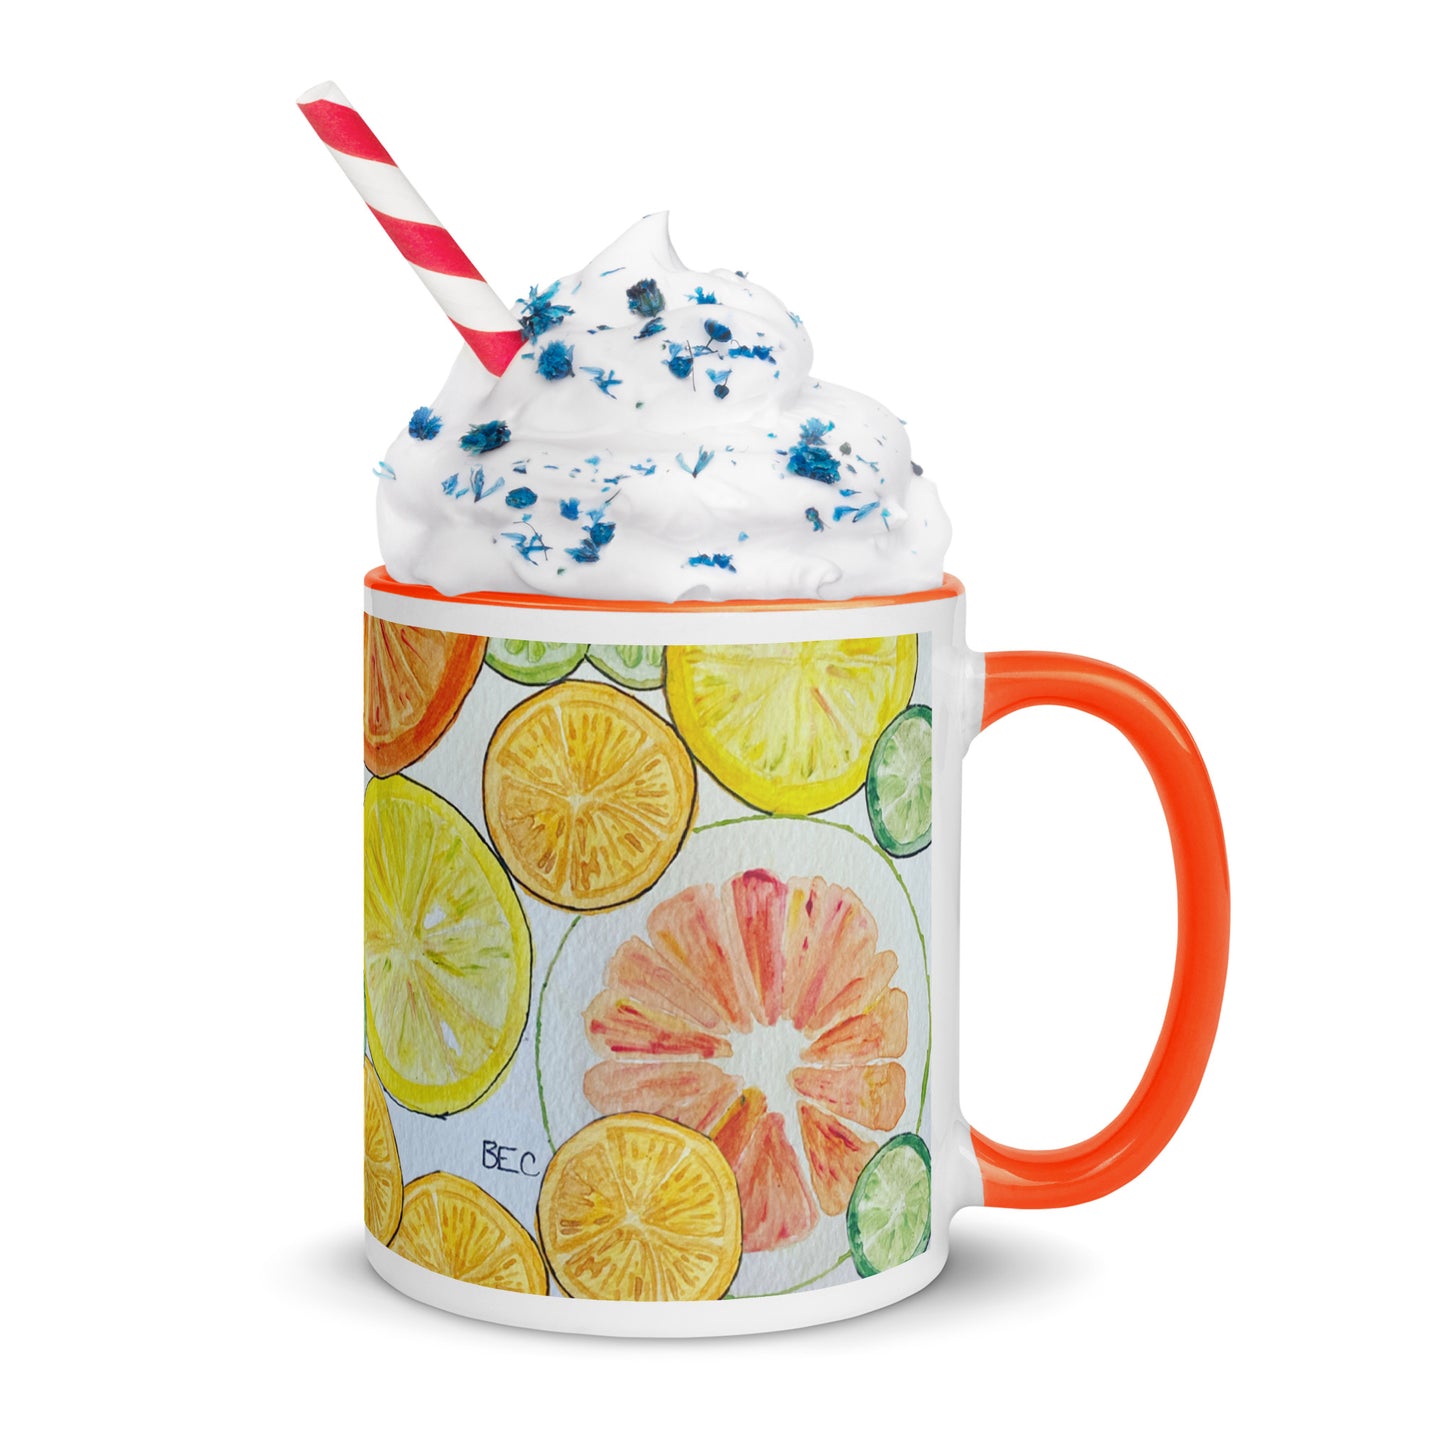 Citrus Mug with Color Inside